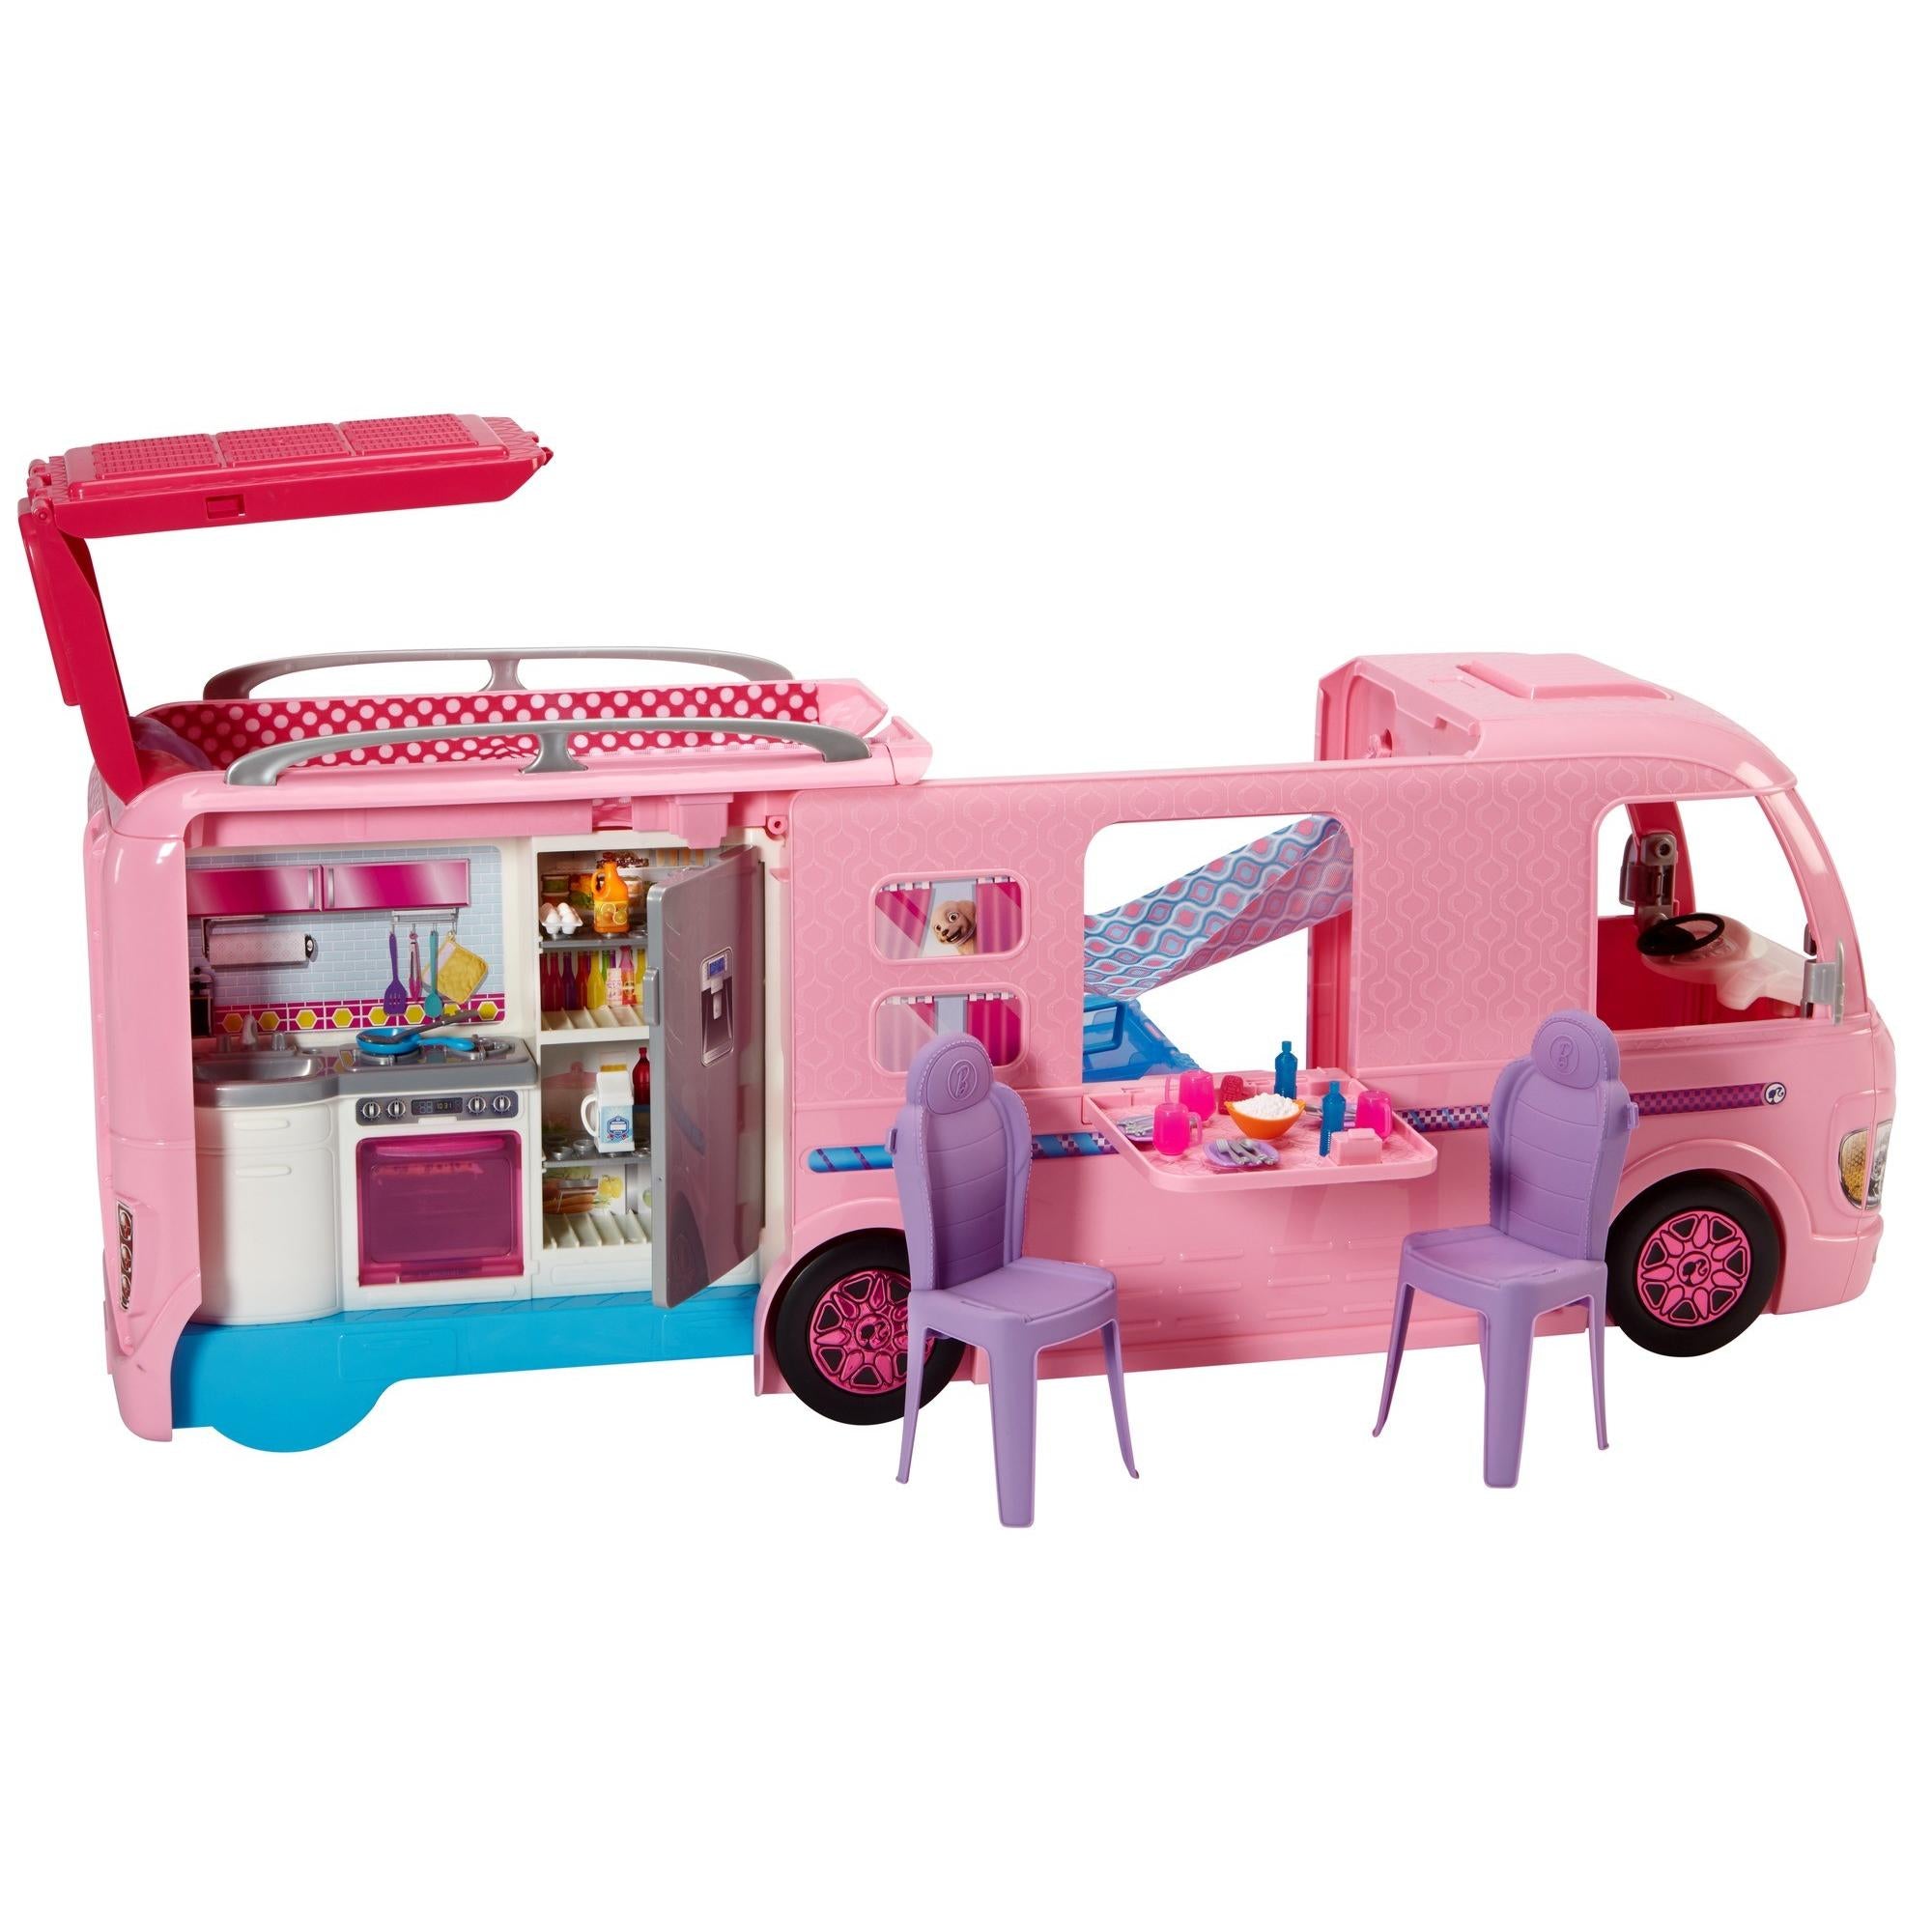 Машина для кукол купить. "Волшебный раскладной фургон" fbr34. Mattel Barbie fbr34 Волшебный раскладной фургон. Барби кемпер fbr34. Фургон Барби Camper.